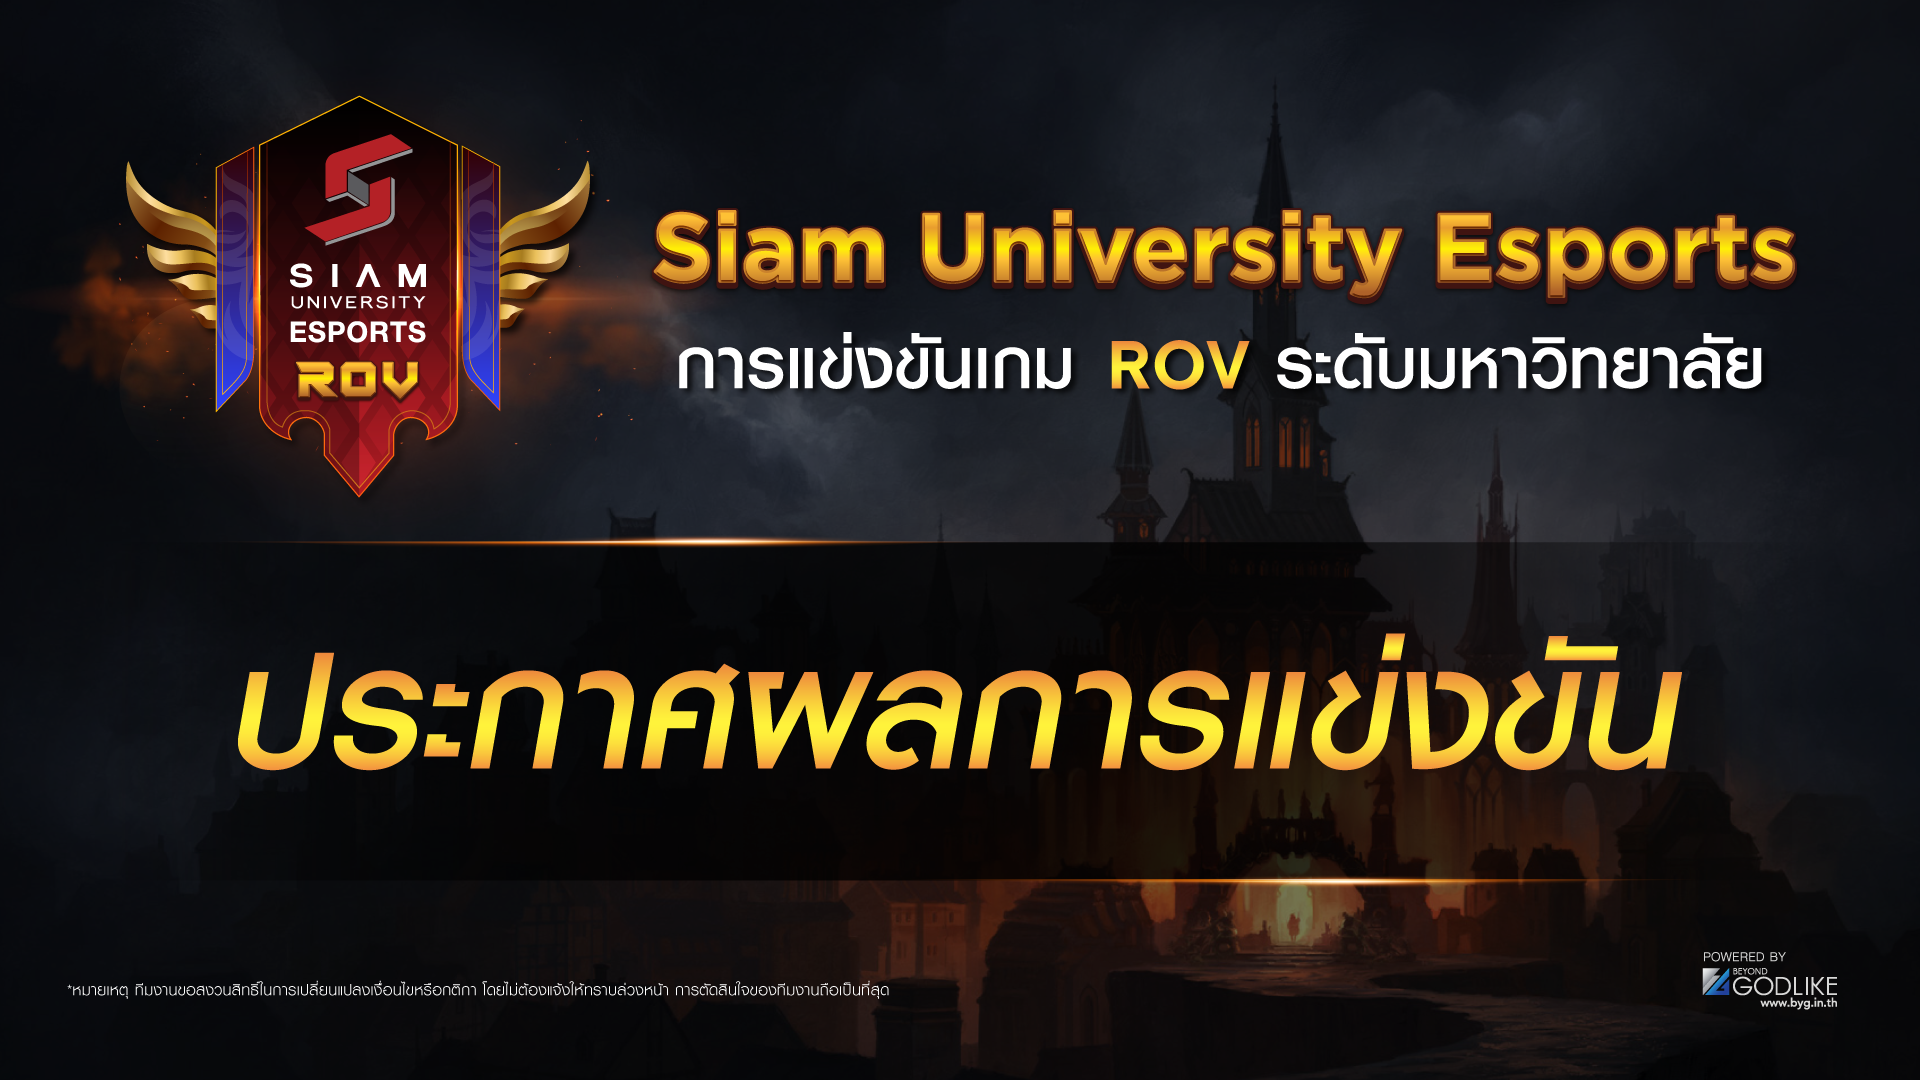 มหาวิทยาลัยสยาม มอบทุนการศึกษาให้ทีมที่ได้รับรางวัลจากการแข่งขัน ROV ระดับมหาวิทยาลัย ในรายการ Siam University Esports